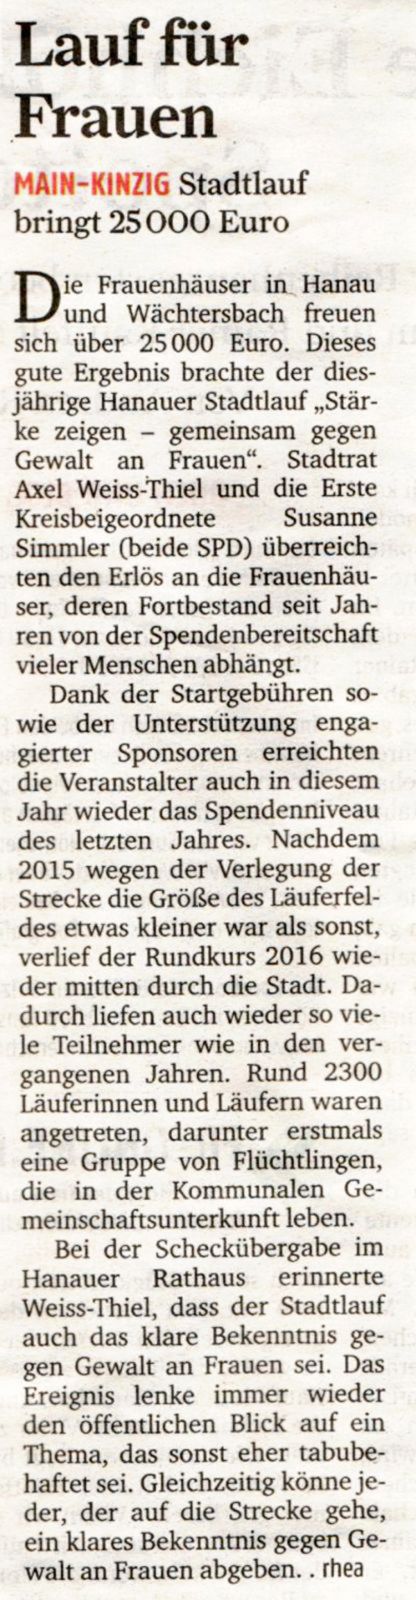 Frankfurter Rundschau Stadtlauf 29.11.2016